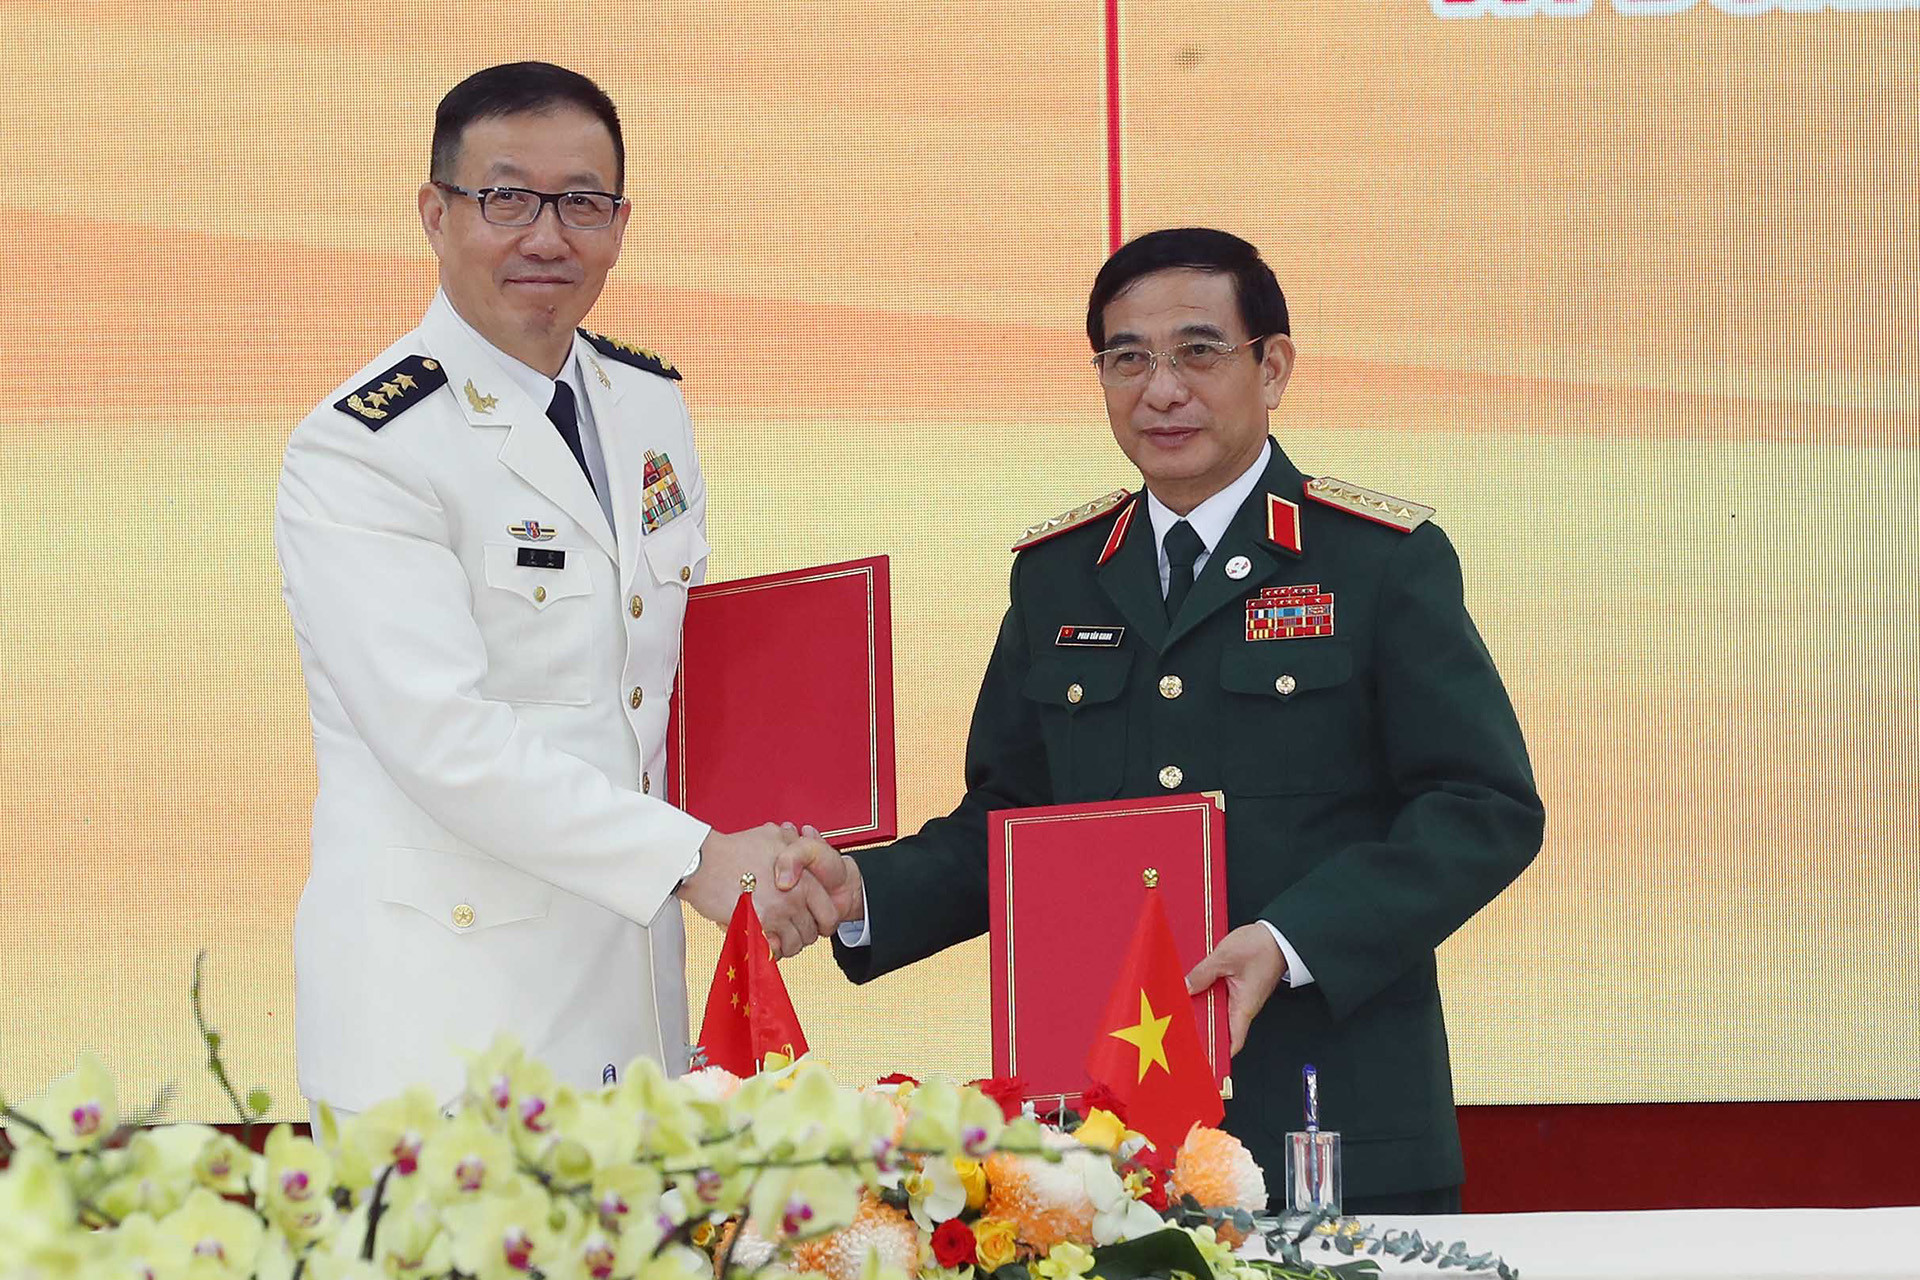 Đại tướng Phan Văn Giang: Việt Nam kiên định chính sách quốc phòng &apos;4 không&apos;